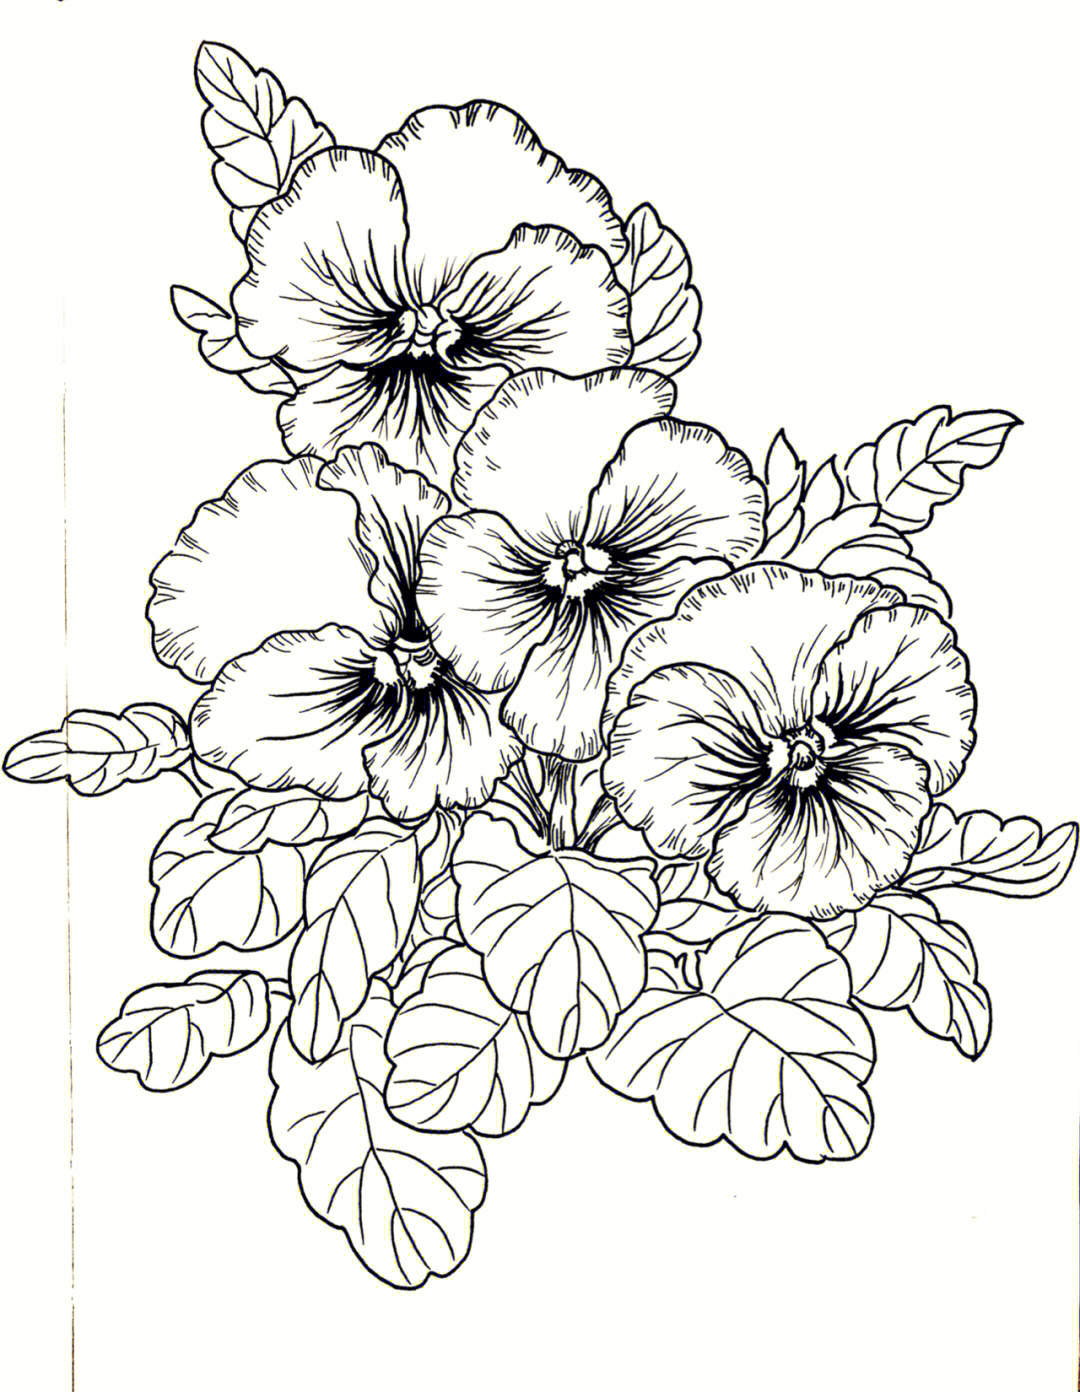 线描手绘花卉临摹三色堇025